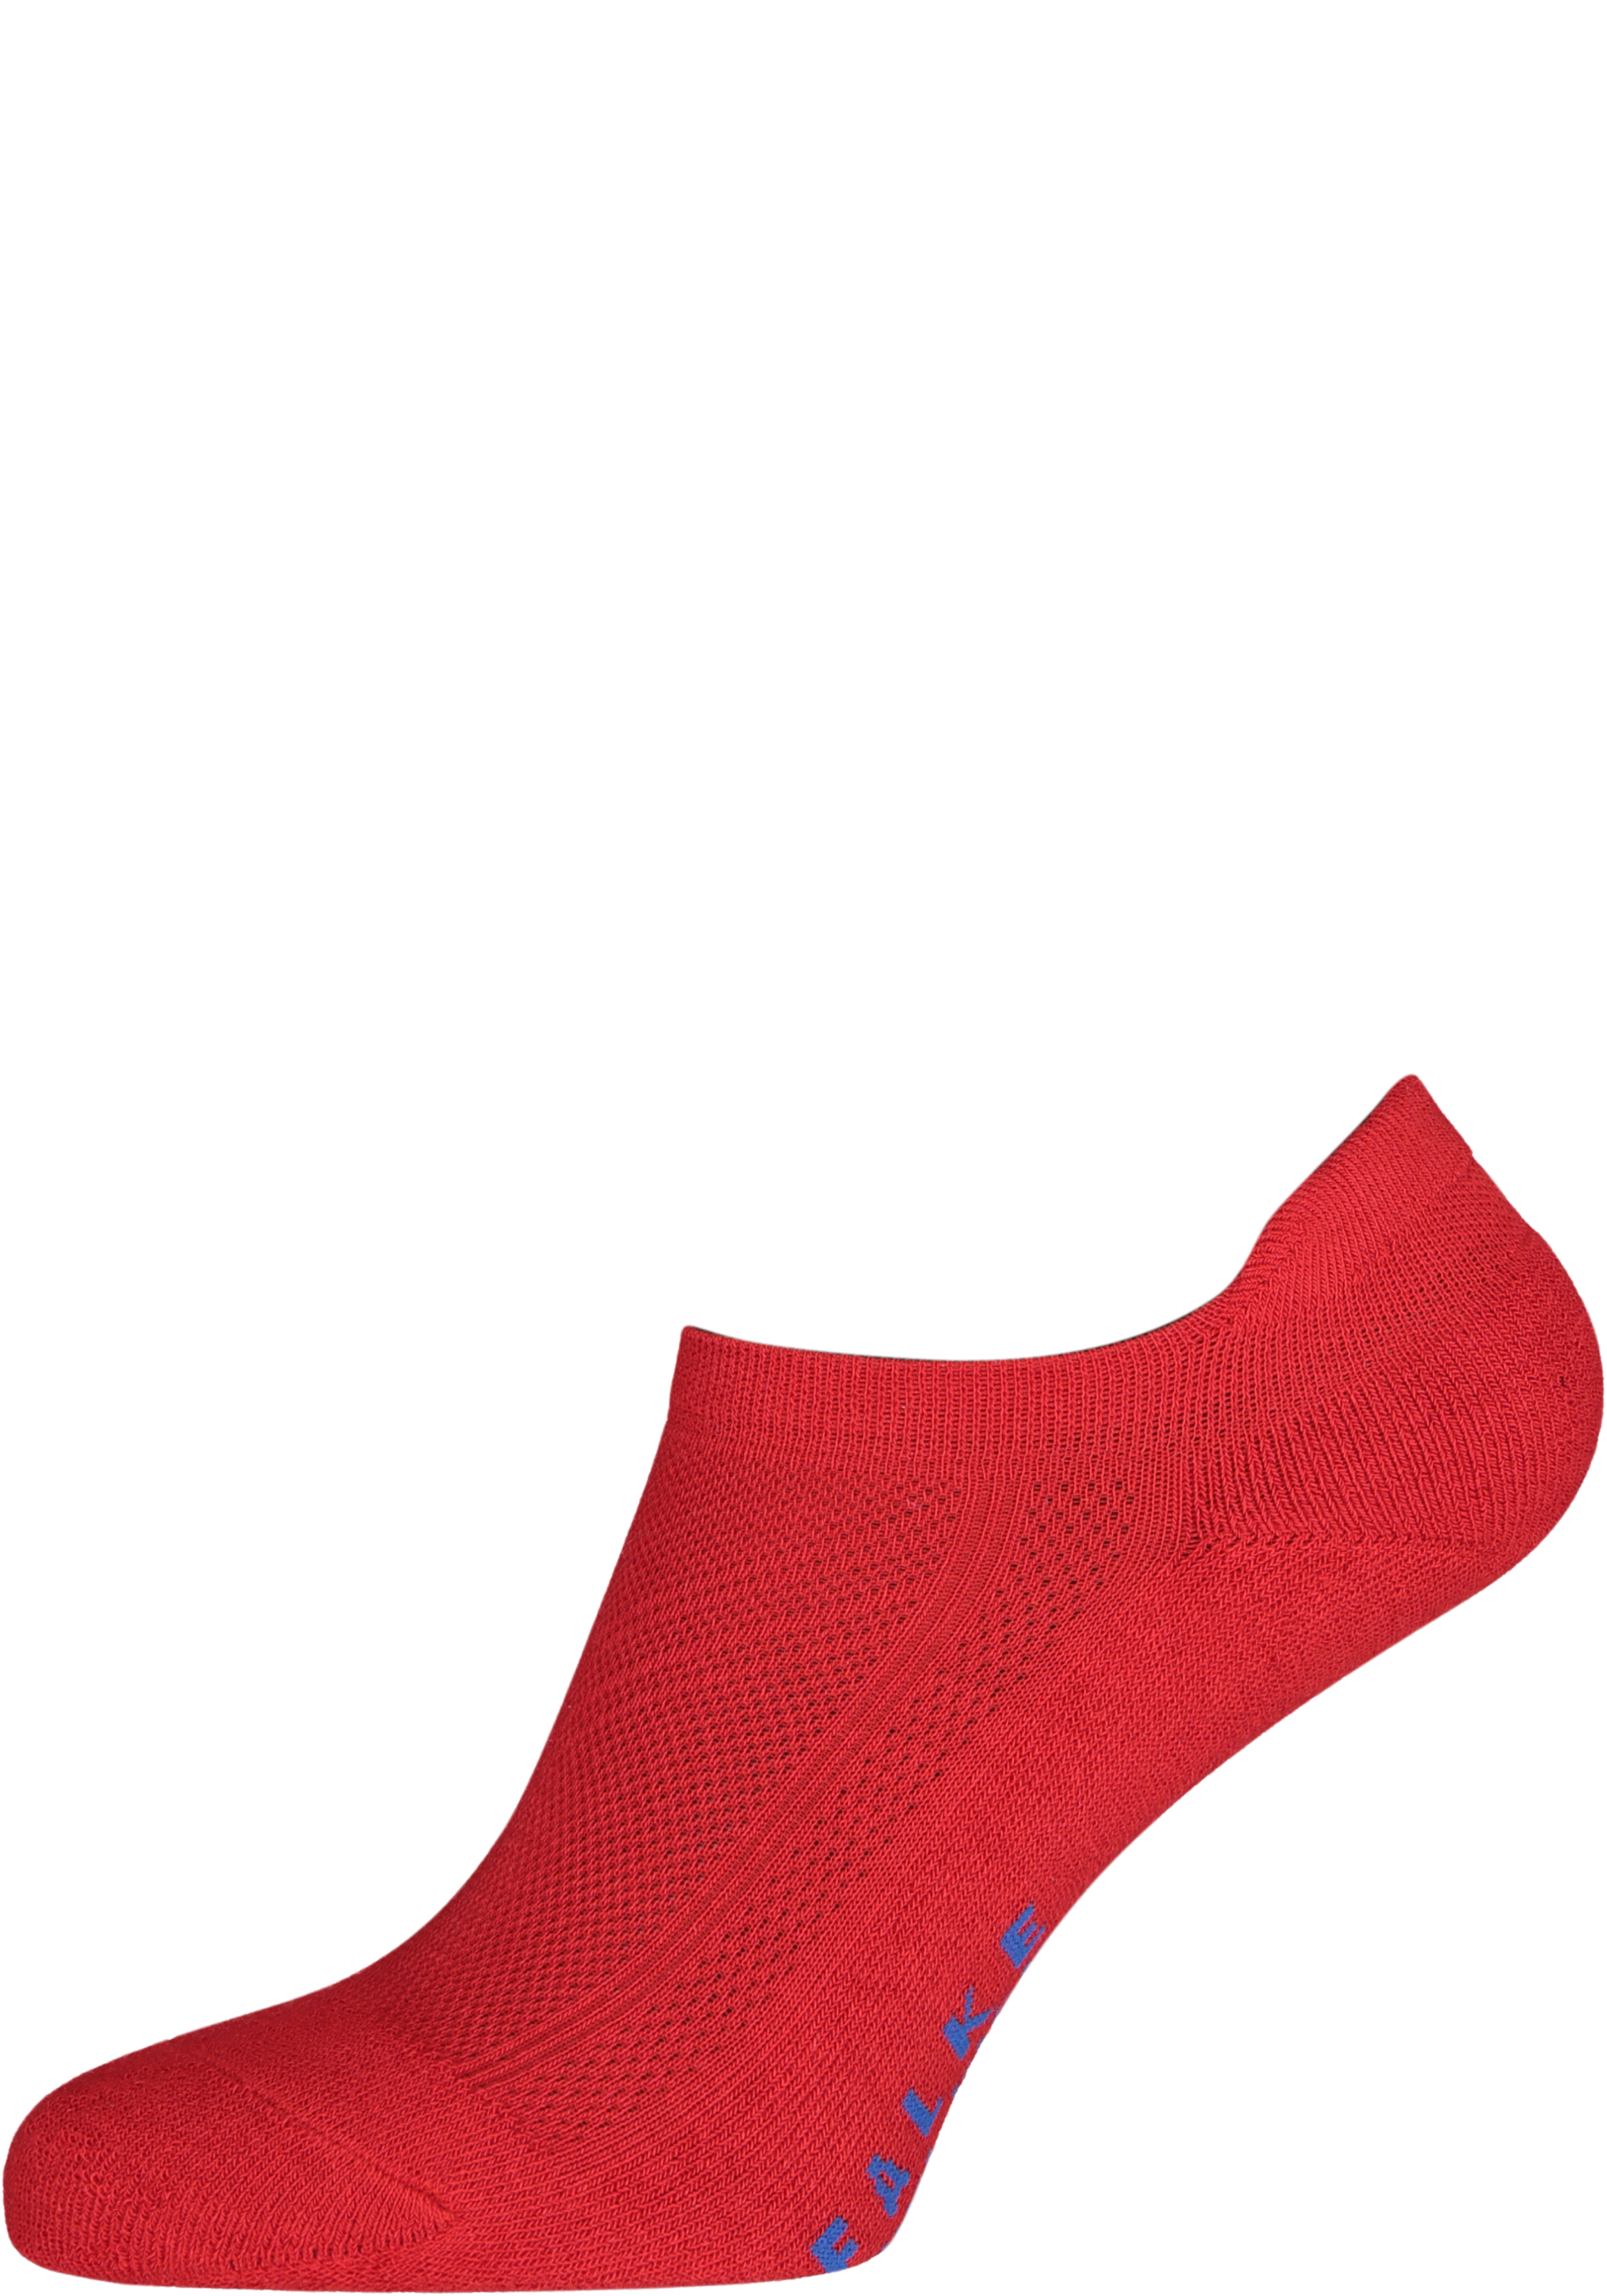 Maak leven Leggen worst FALKE Cool Kick unisex enkelsokken, rood (fire) - Shop de nieuwste  voorjaarsmode